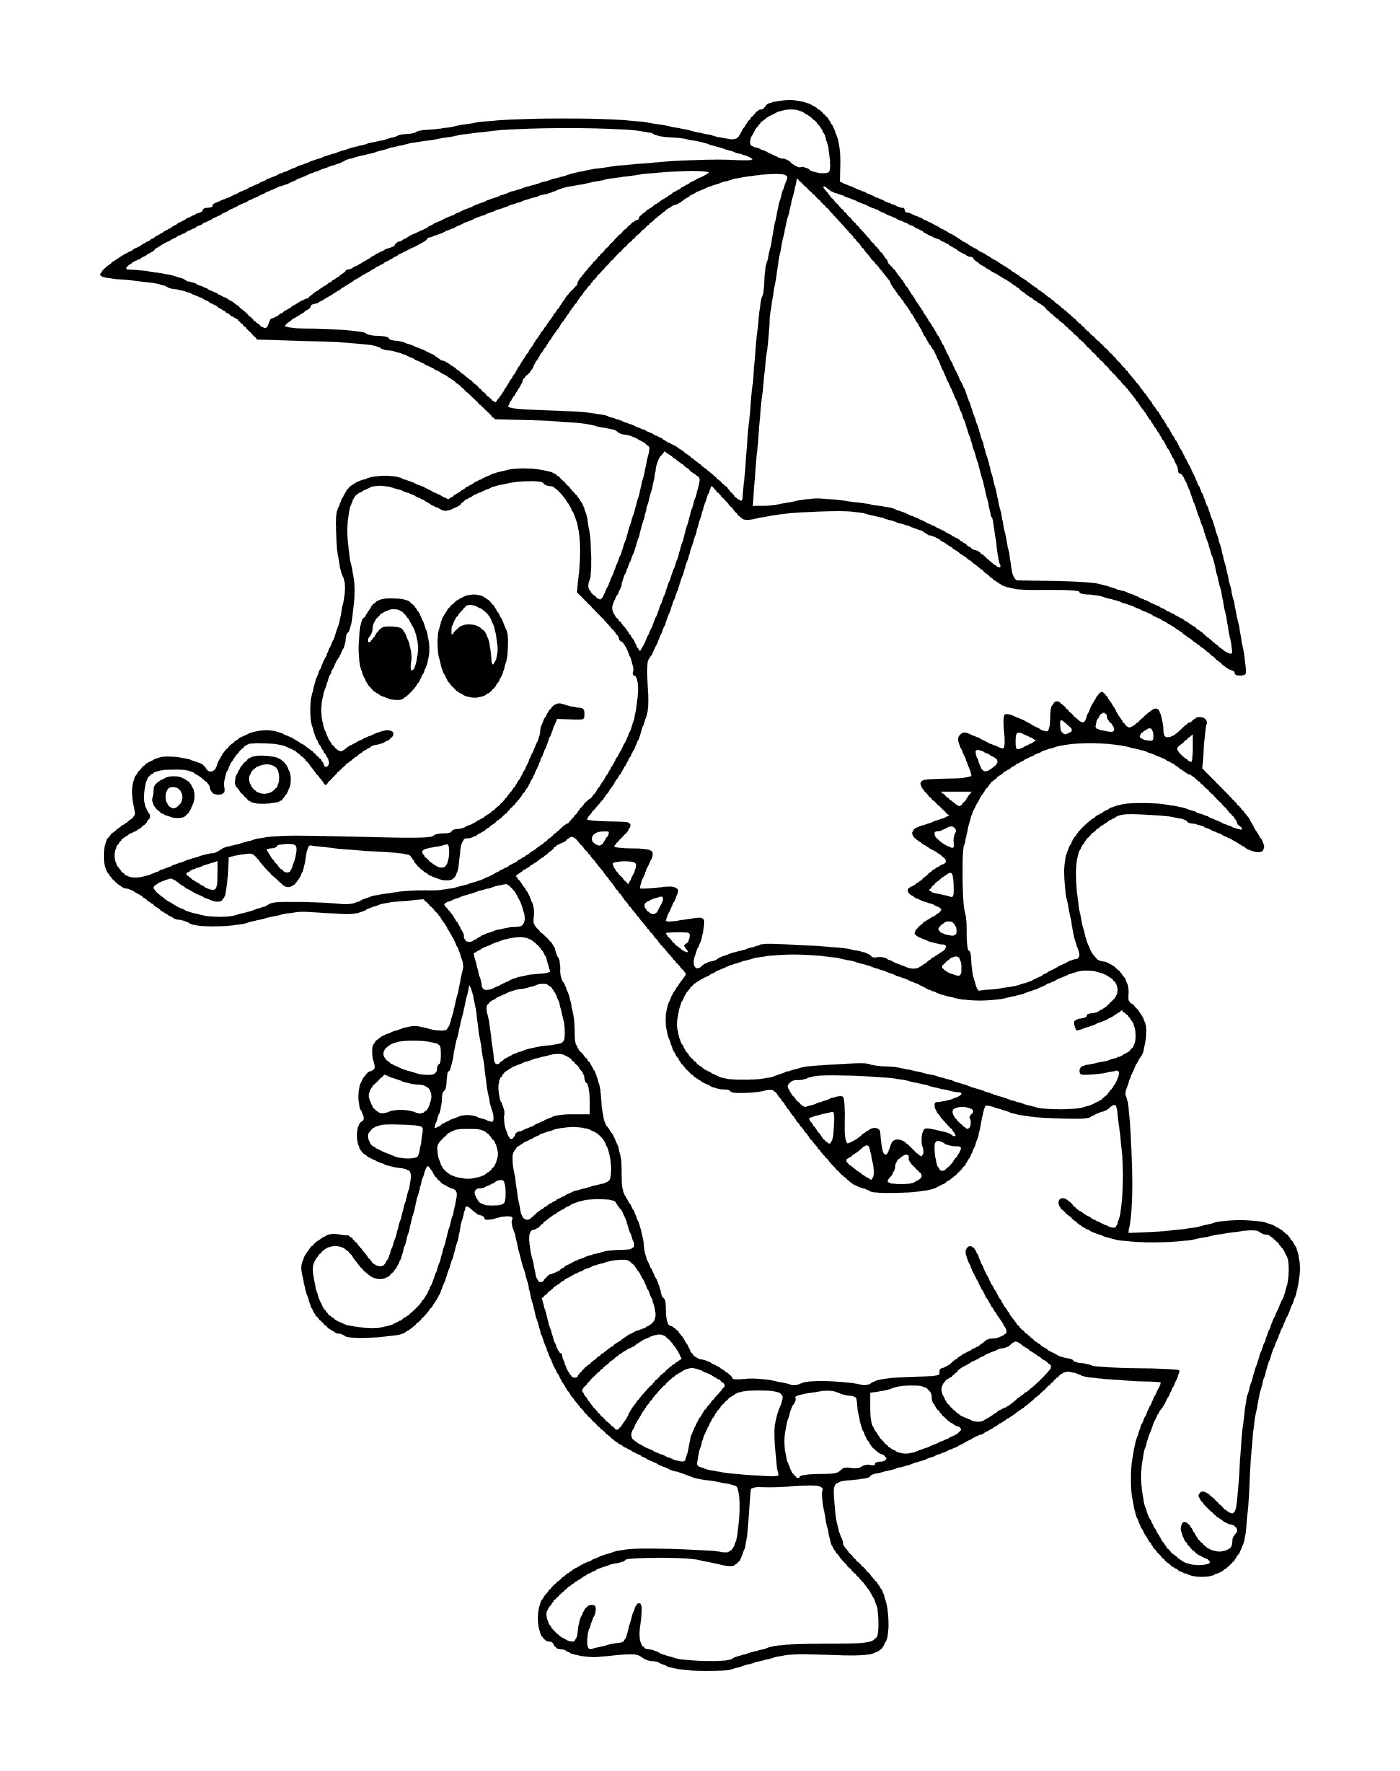  Крокодил с зонтиком 